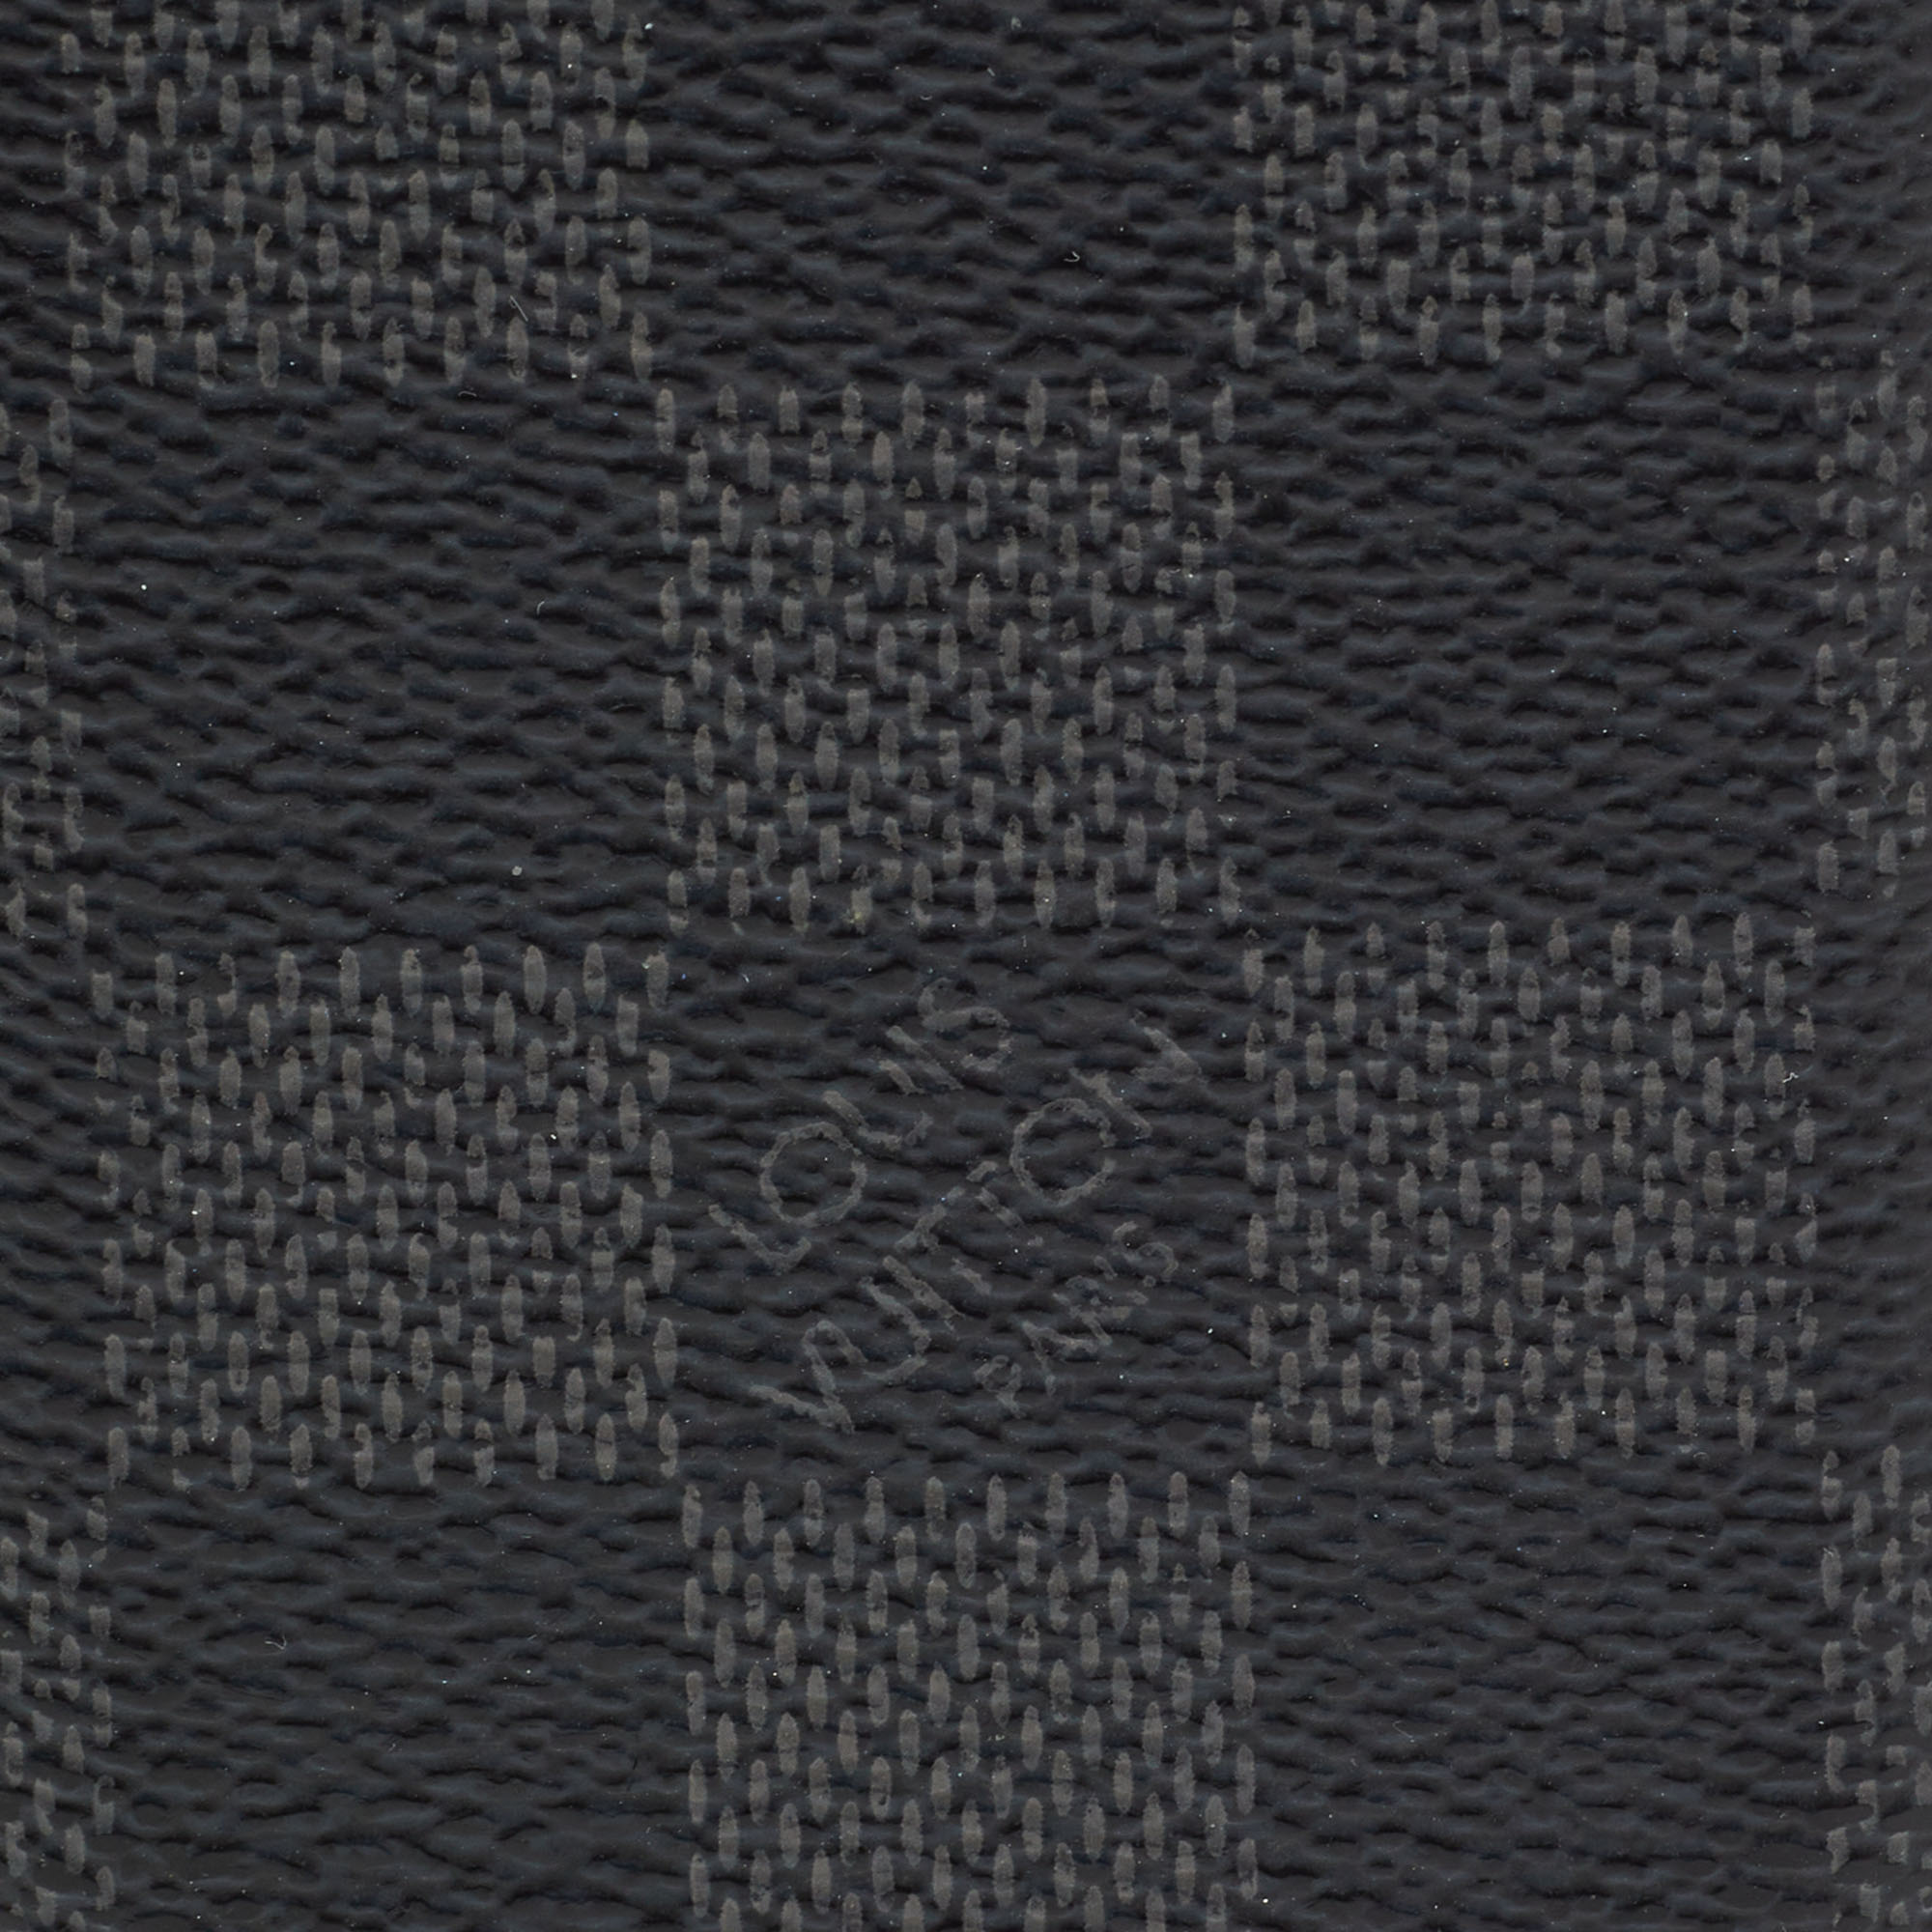 Louis Vuitton Damier Graphite Canvas Phone Case